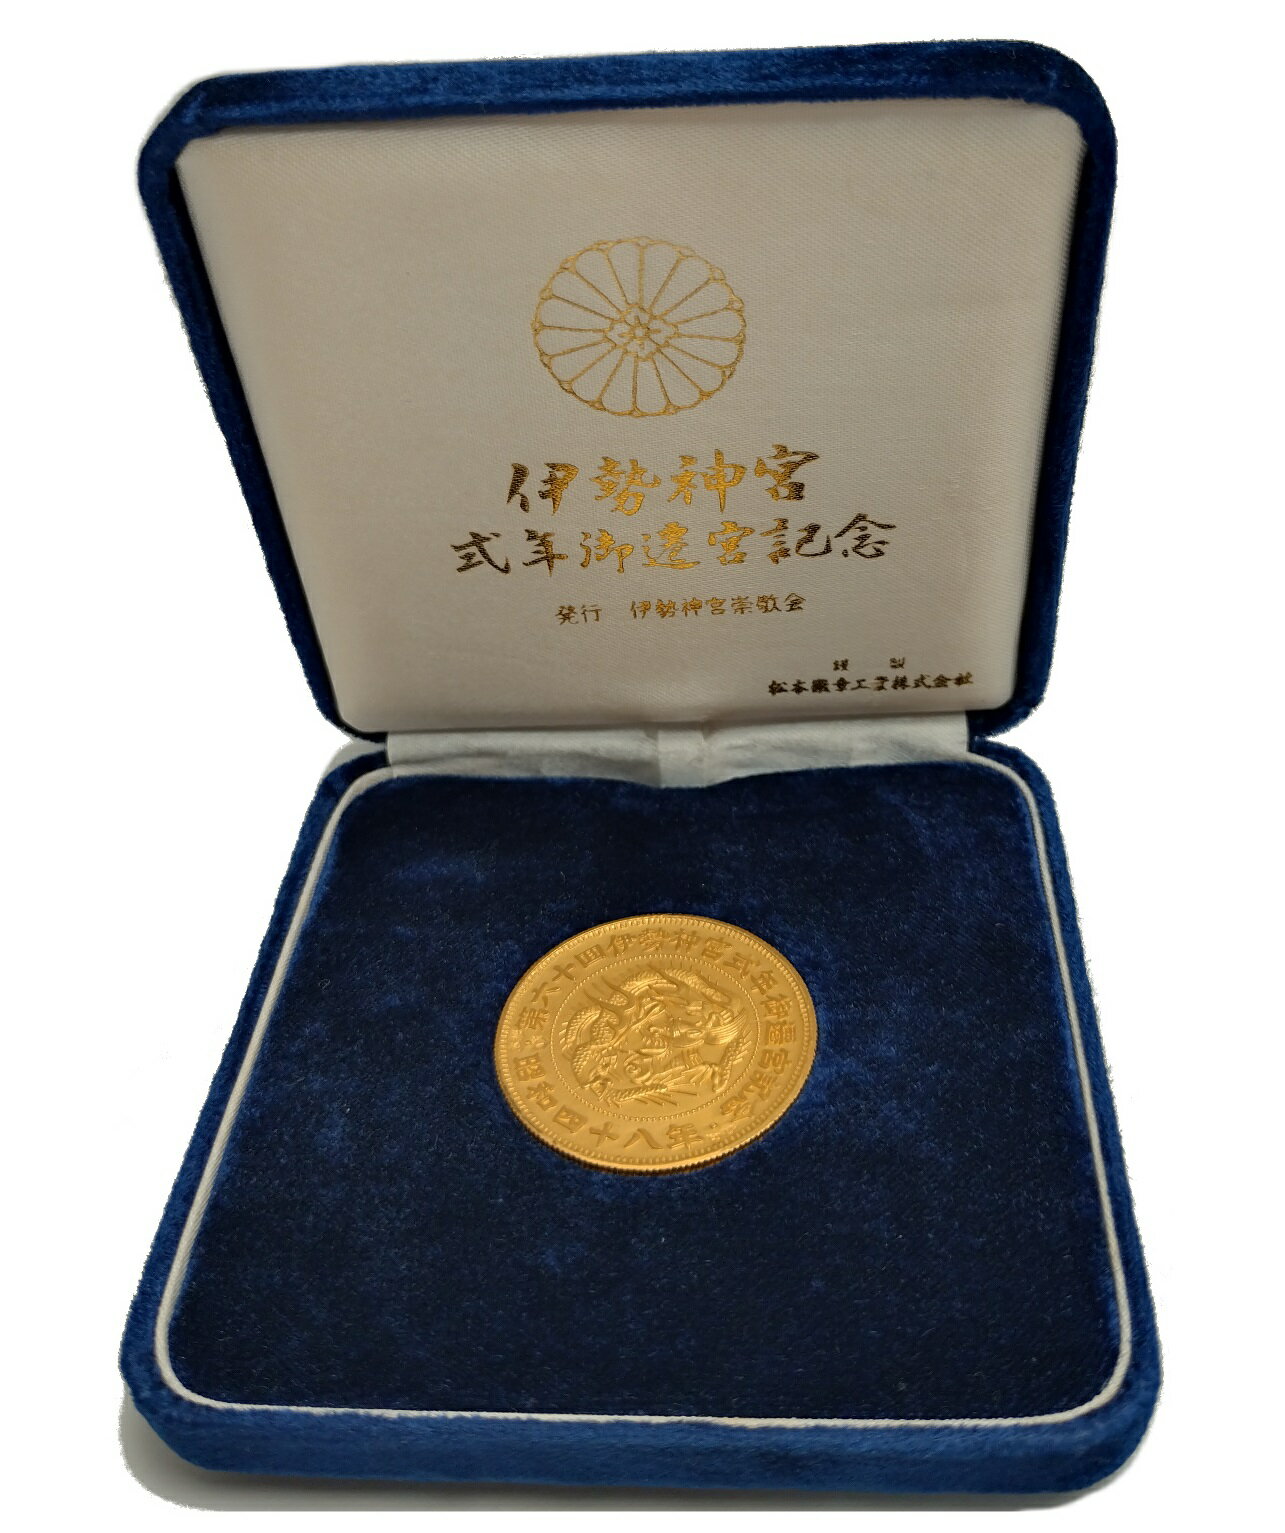 商　品　名： 第六十回 伊勢神宮 式年遷宮記念 金メダル コイン直径：約 35mm 素材：K24（純金） 重量：20.1g 程　　　度： A（状態の良い中古品） 付　属　品： ケース 1973年に行われた第60回伊勢神宮式年遷宮を記念して発行された純金メダルです。 目立つ傷・汚れはございませんが、年月を感じさせるお品です。 珍しい一品となっております。